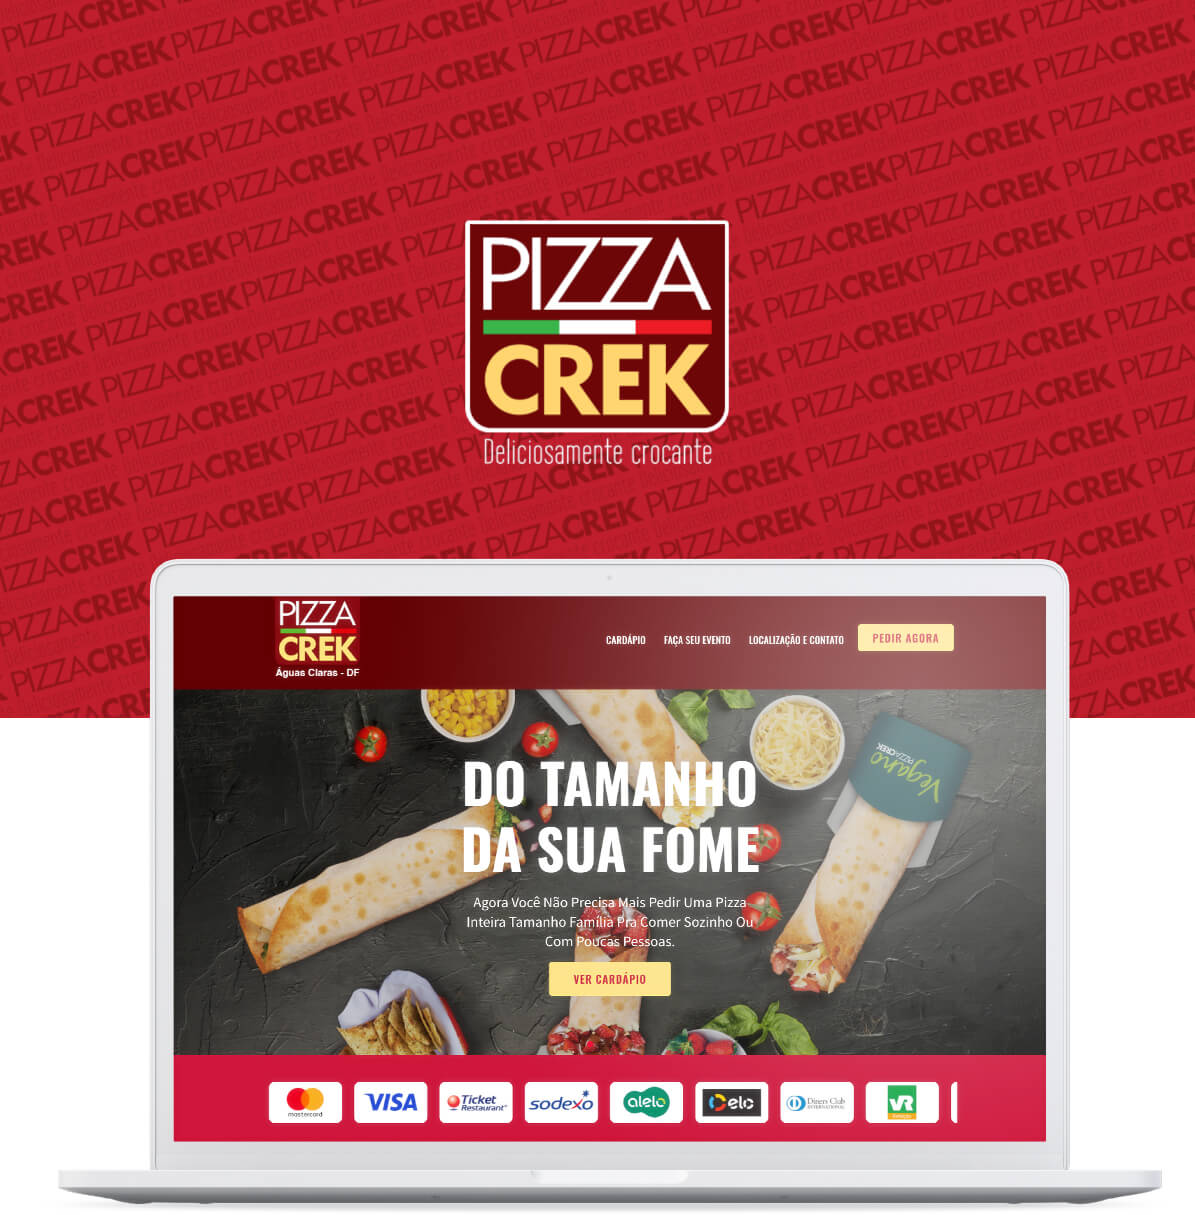 PizzaCrek Site Buzz61 Parte 1